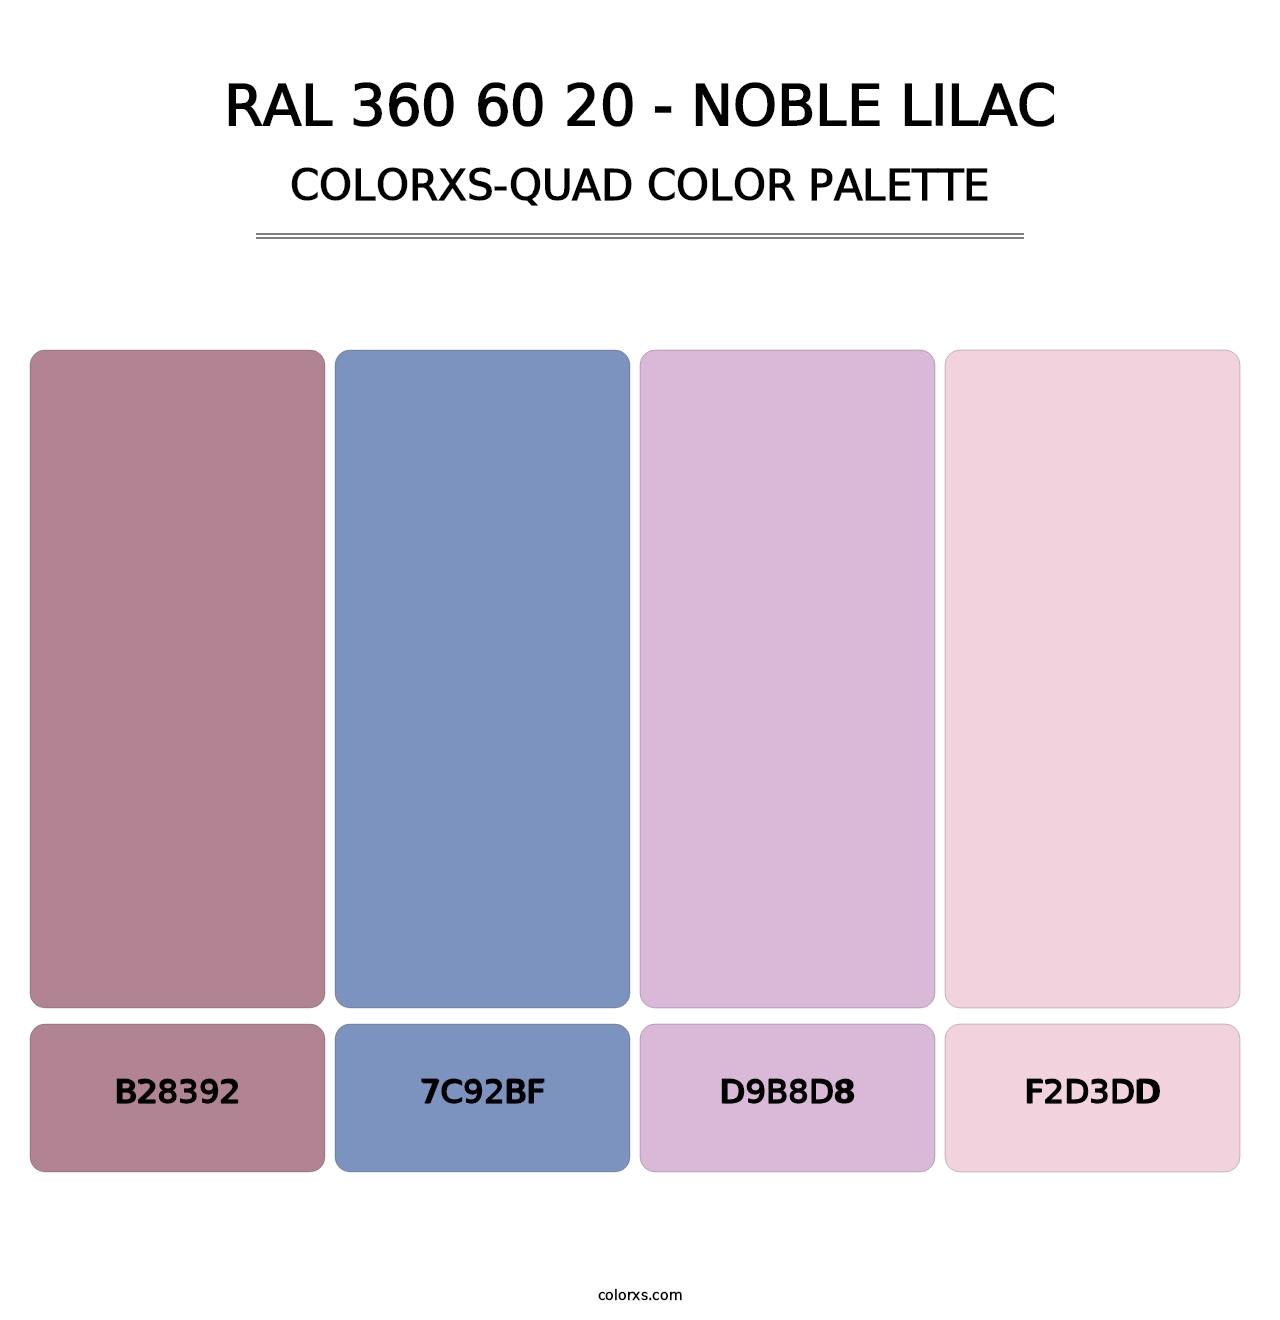 RAL 360 60 20 - Noble Lilac - Colorxs Quad Palette